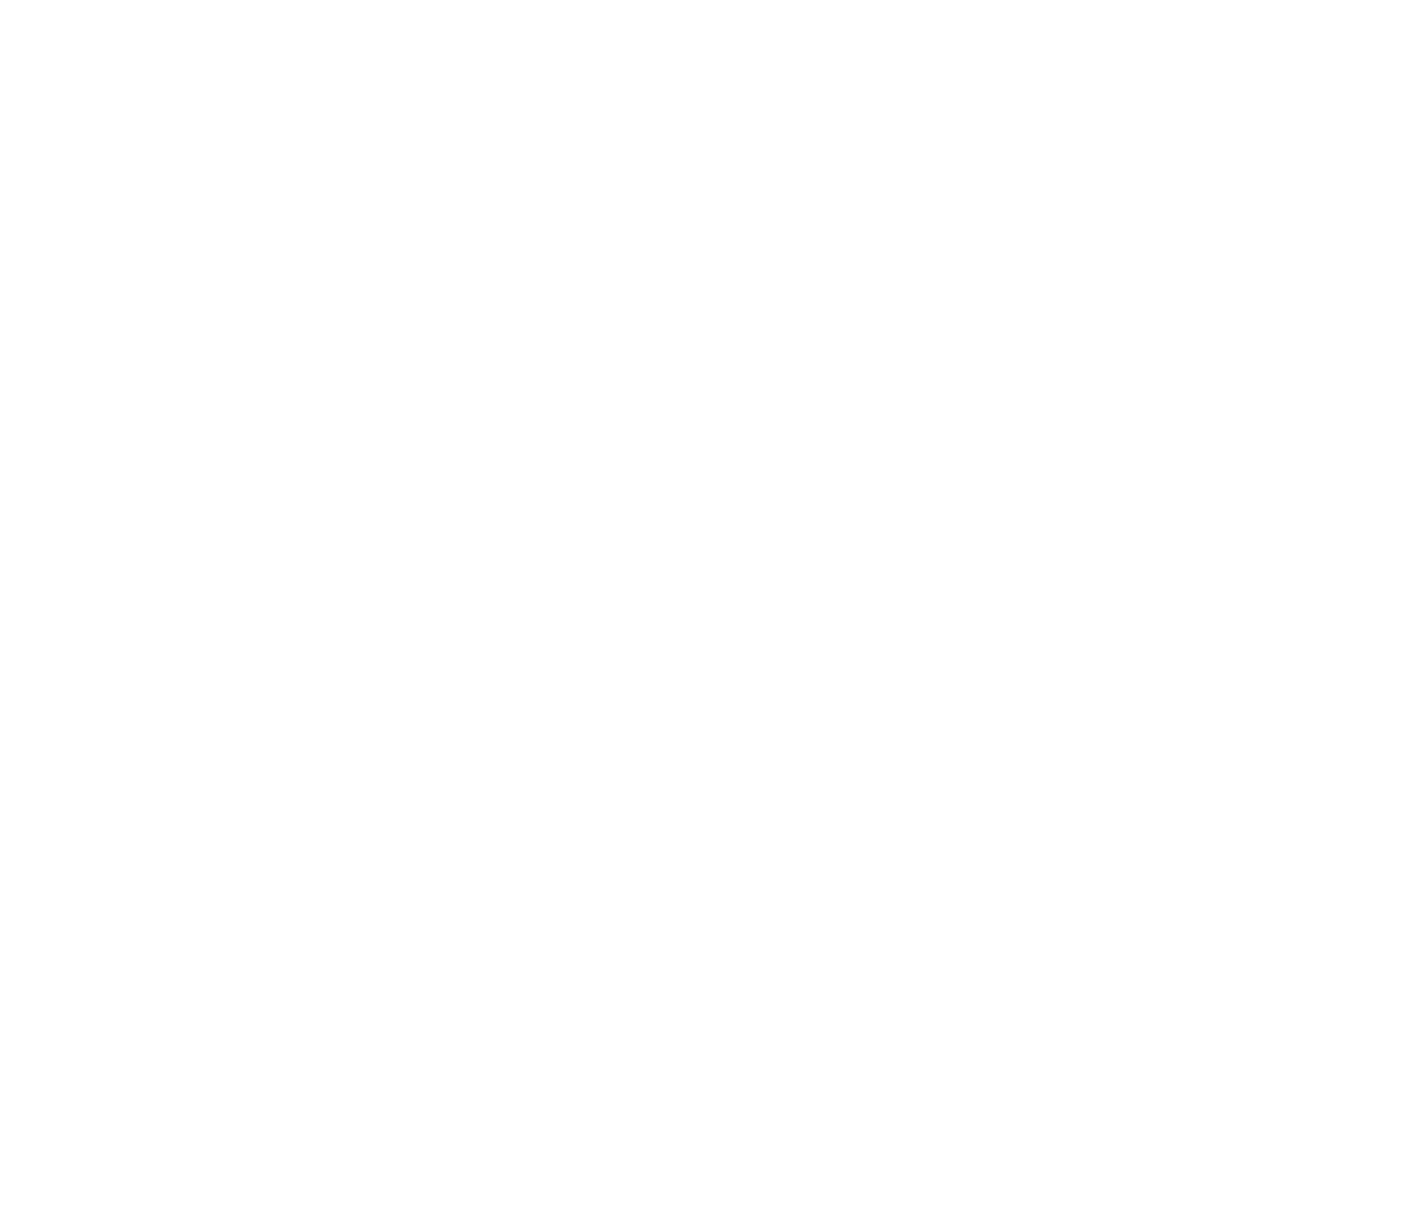 Nuorisoseurat 140 vuotta -logo